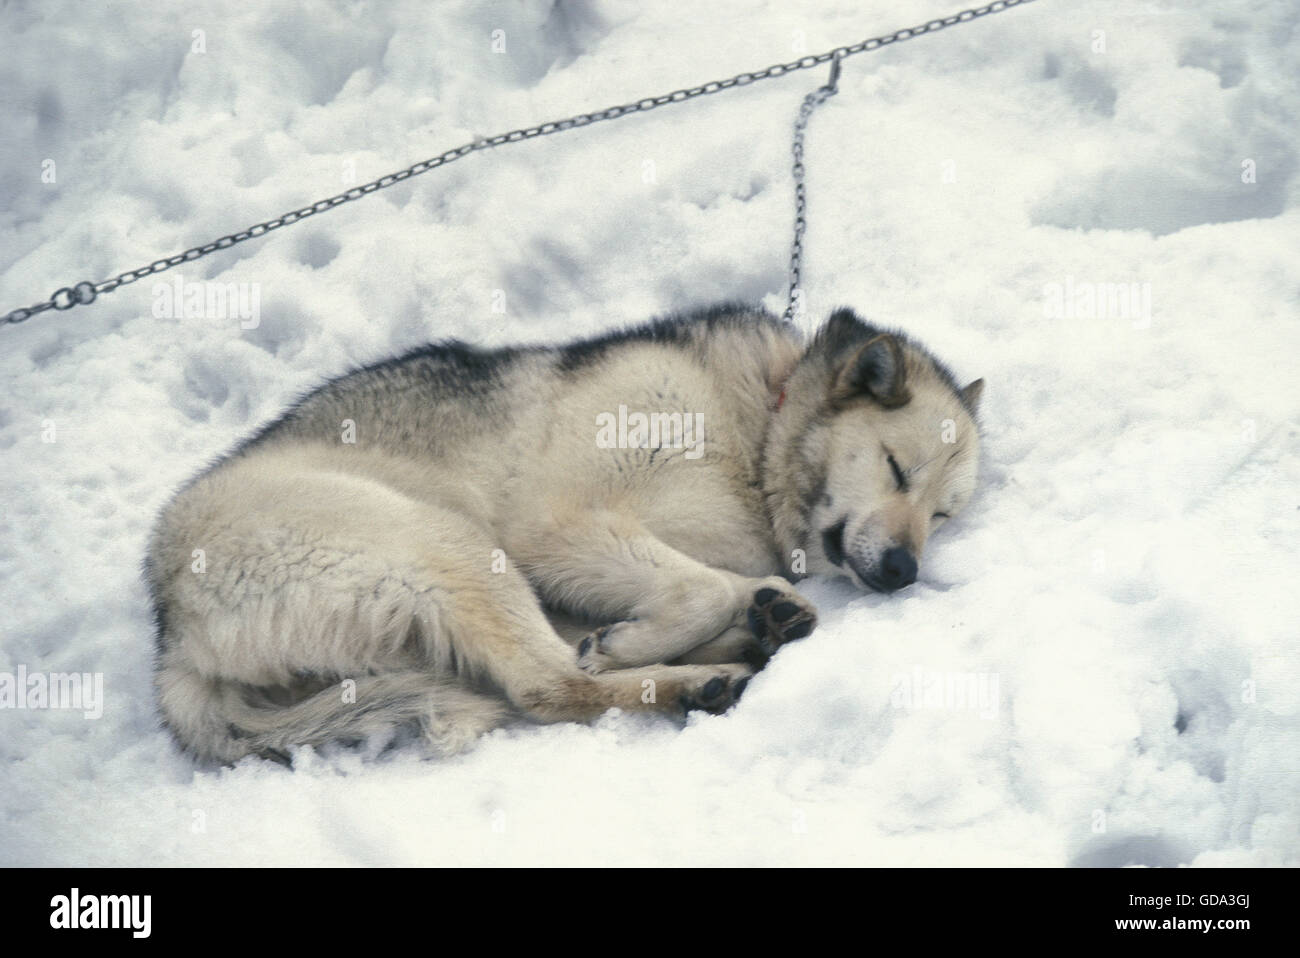 Groenland chien dormir sur la neige Banque D'Images